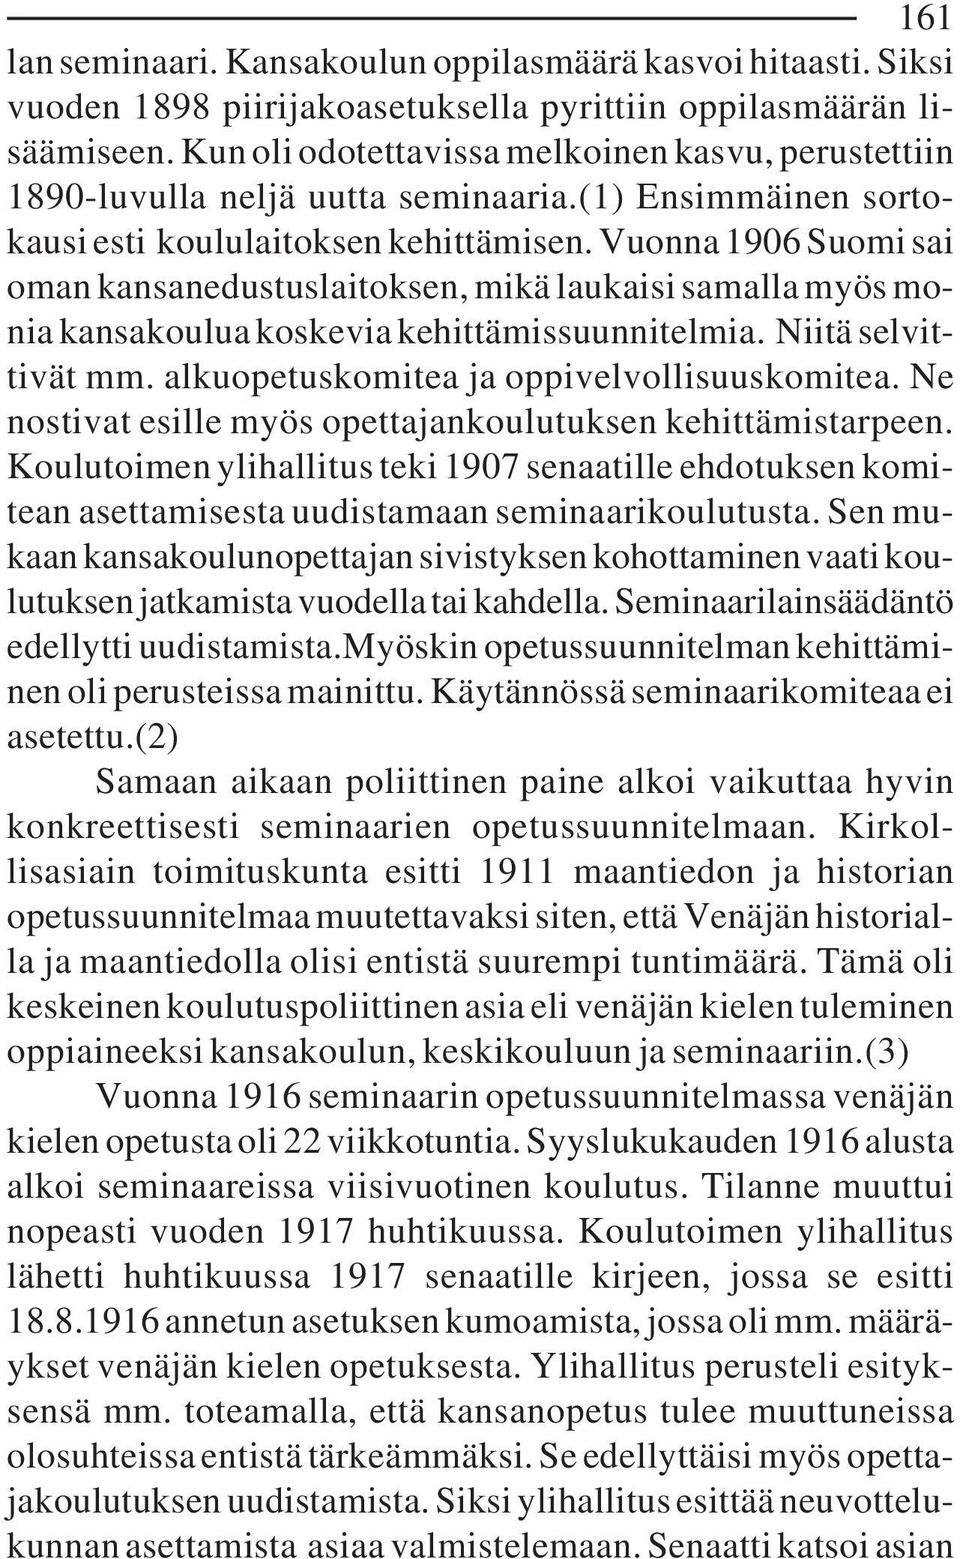 Vuonna 1906 Suomi sai oman kansanedustuslaitoksen, mikä laukaisi samalla myös monia kansakoulua koskevia kehittämissuunnitelmia. Niitä selvittivät mm. alkuopetuskomitea ja oppivelvollisuuskomitea.